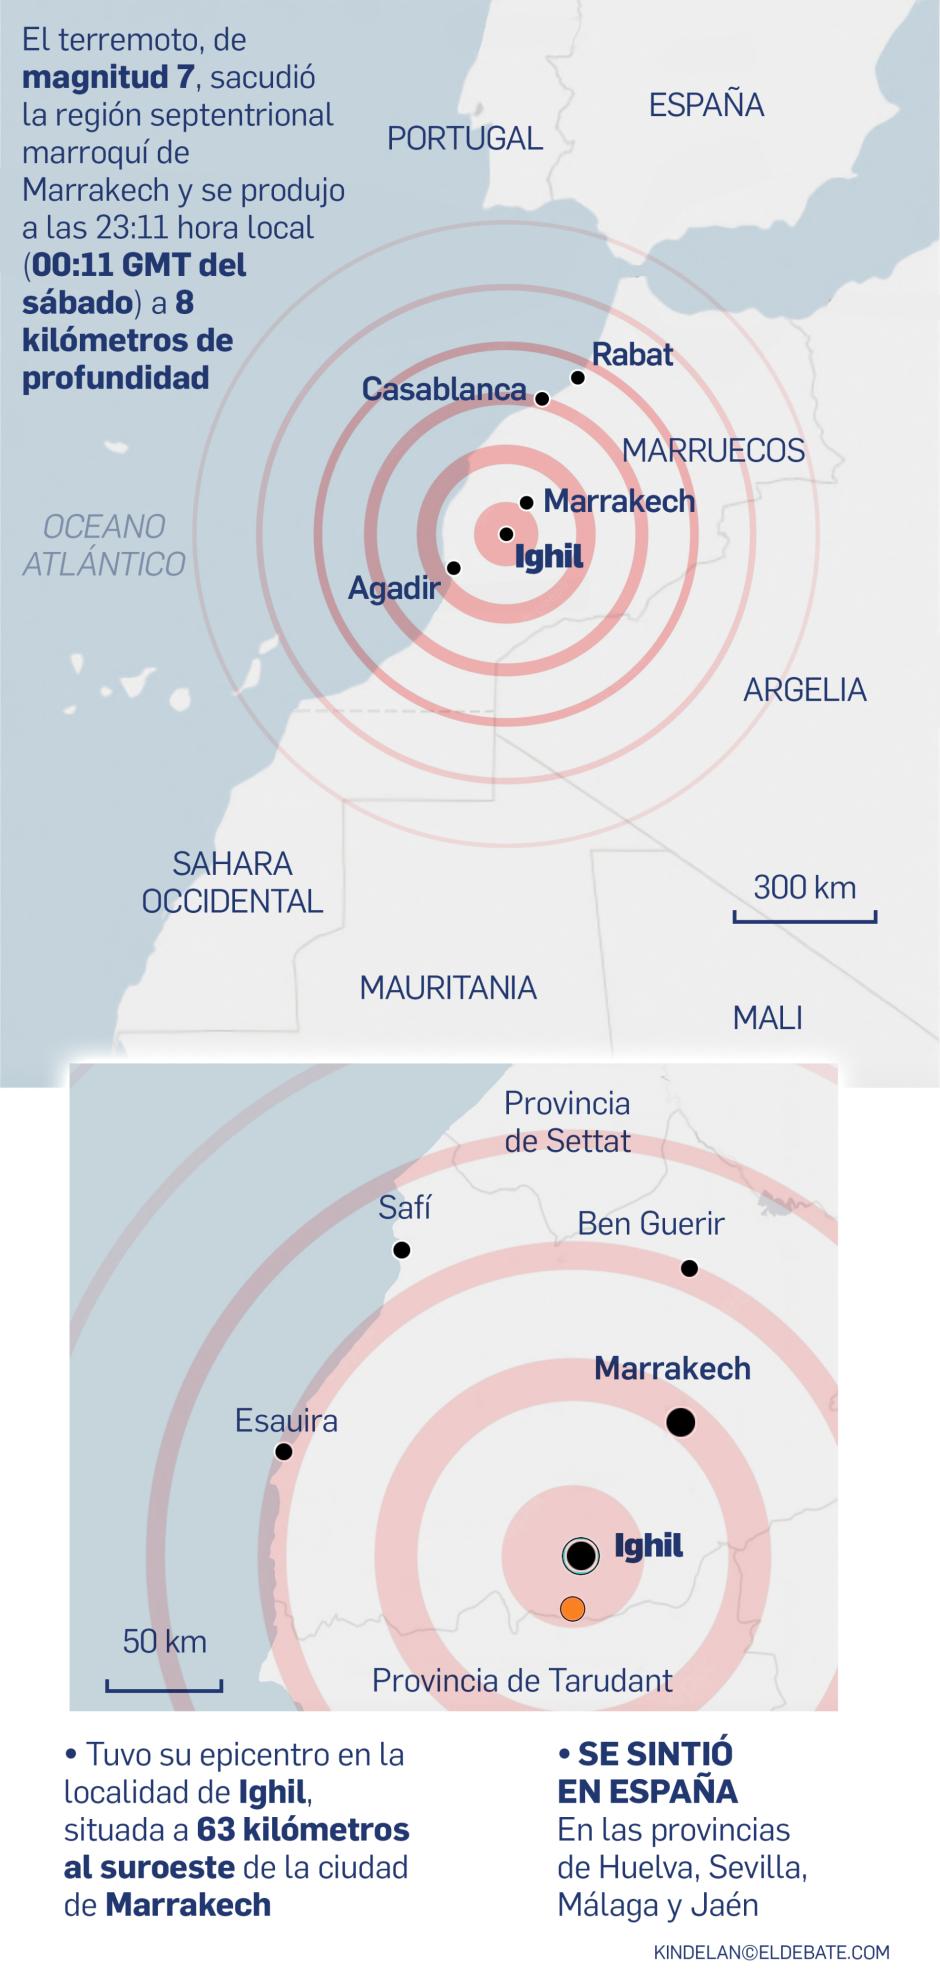 Infografía del terremoto en Marruecos